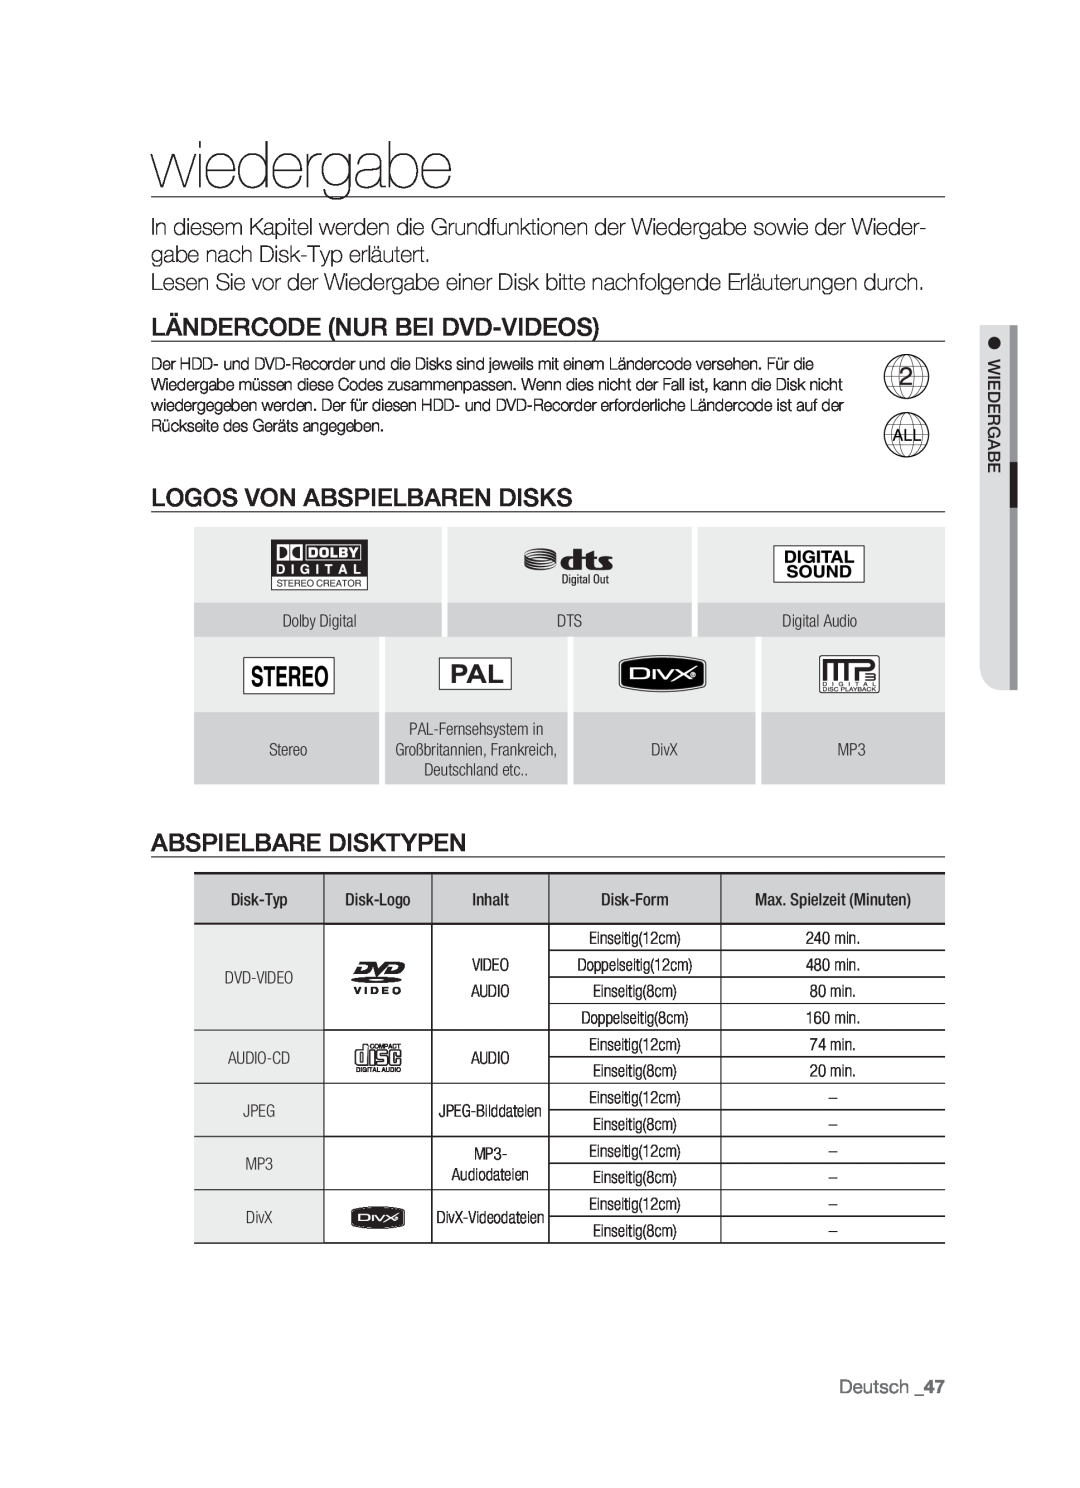 Samsung DVD-HR773/AUS manual wiedergabe, Ländercode Nur Bei Dvd-Videos, Logos Von Abspielbaren Disks, Abspielbare Disktypen 